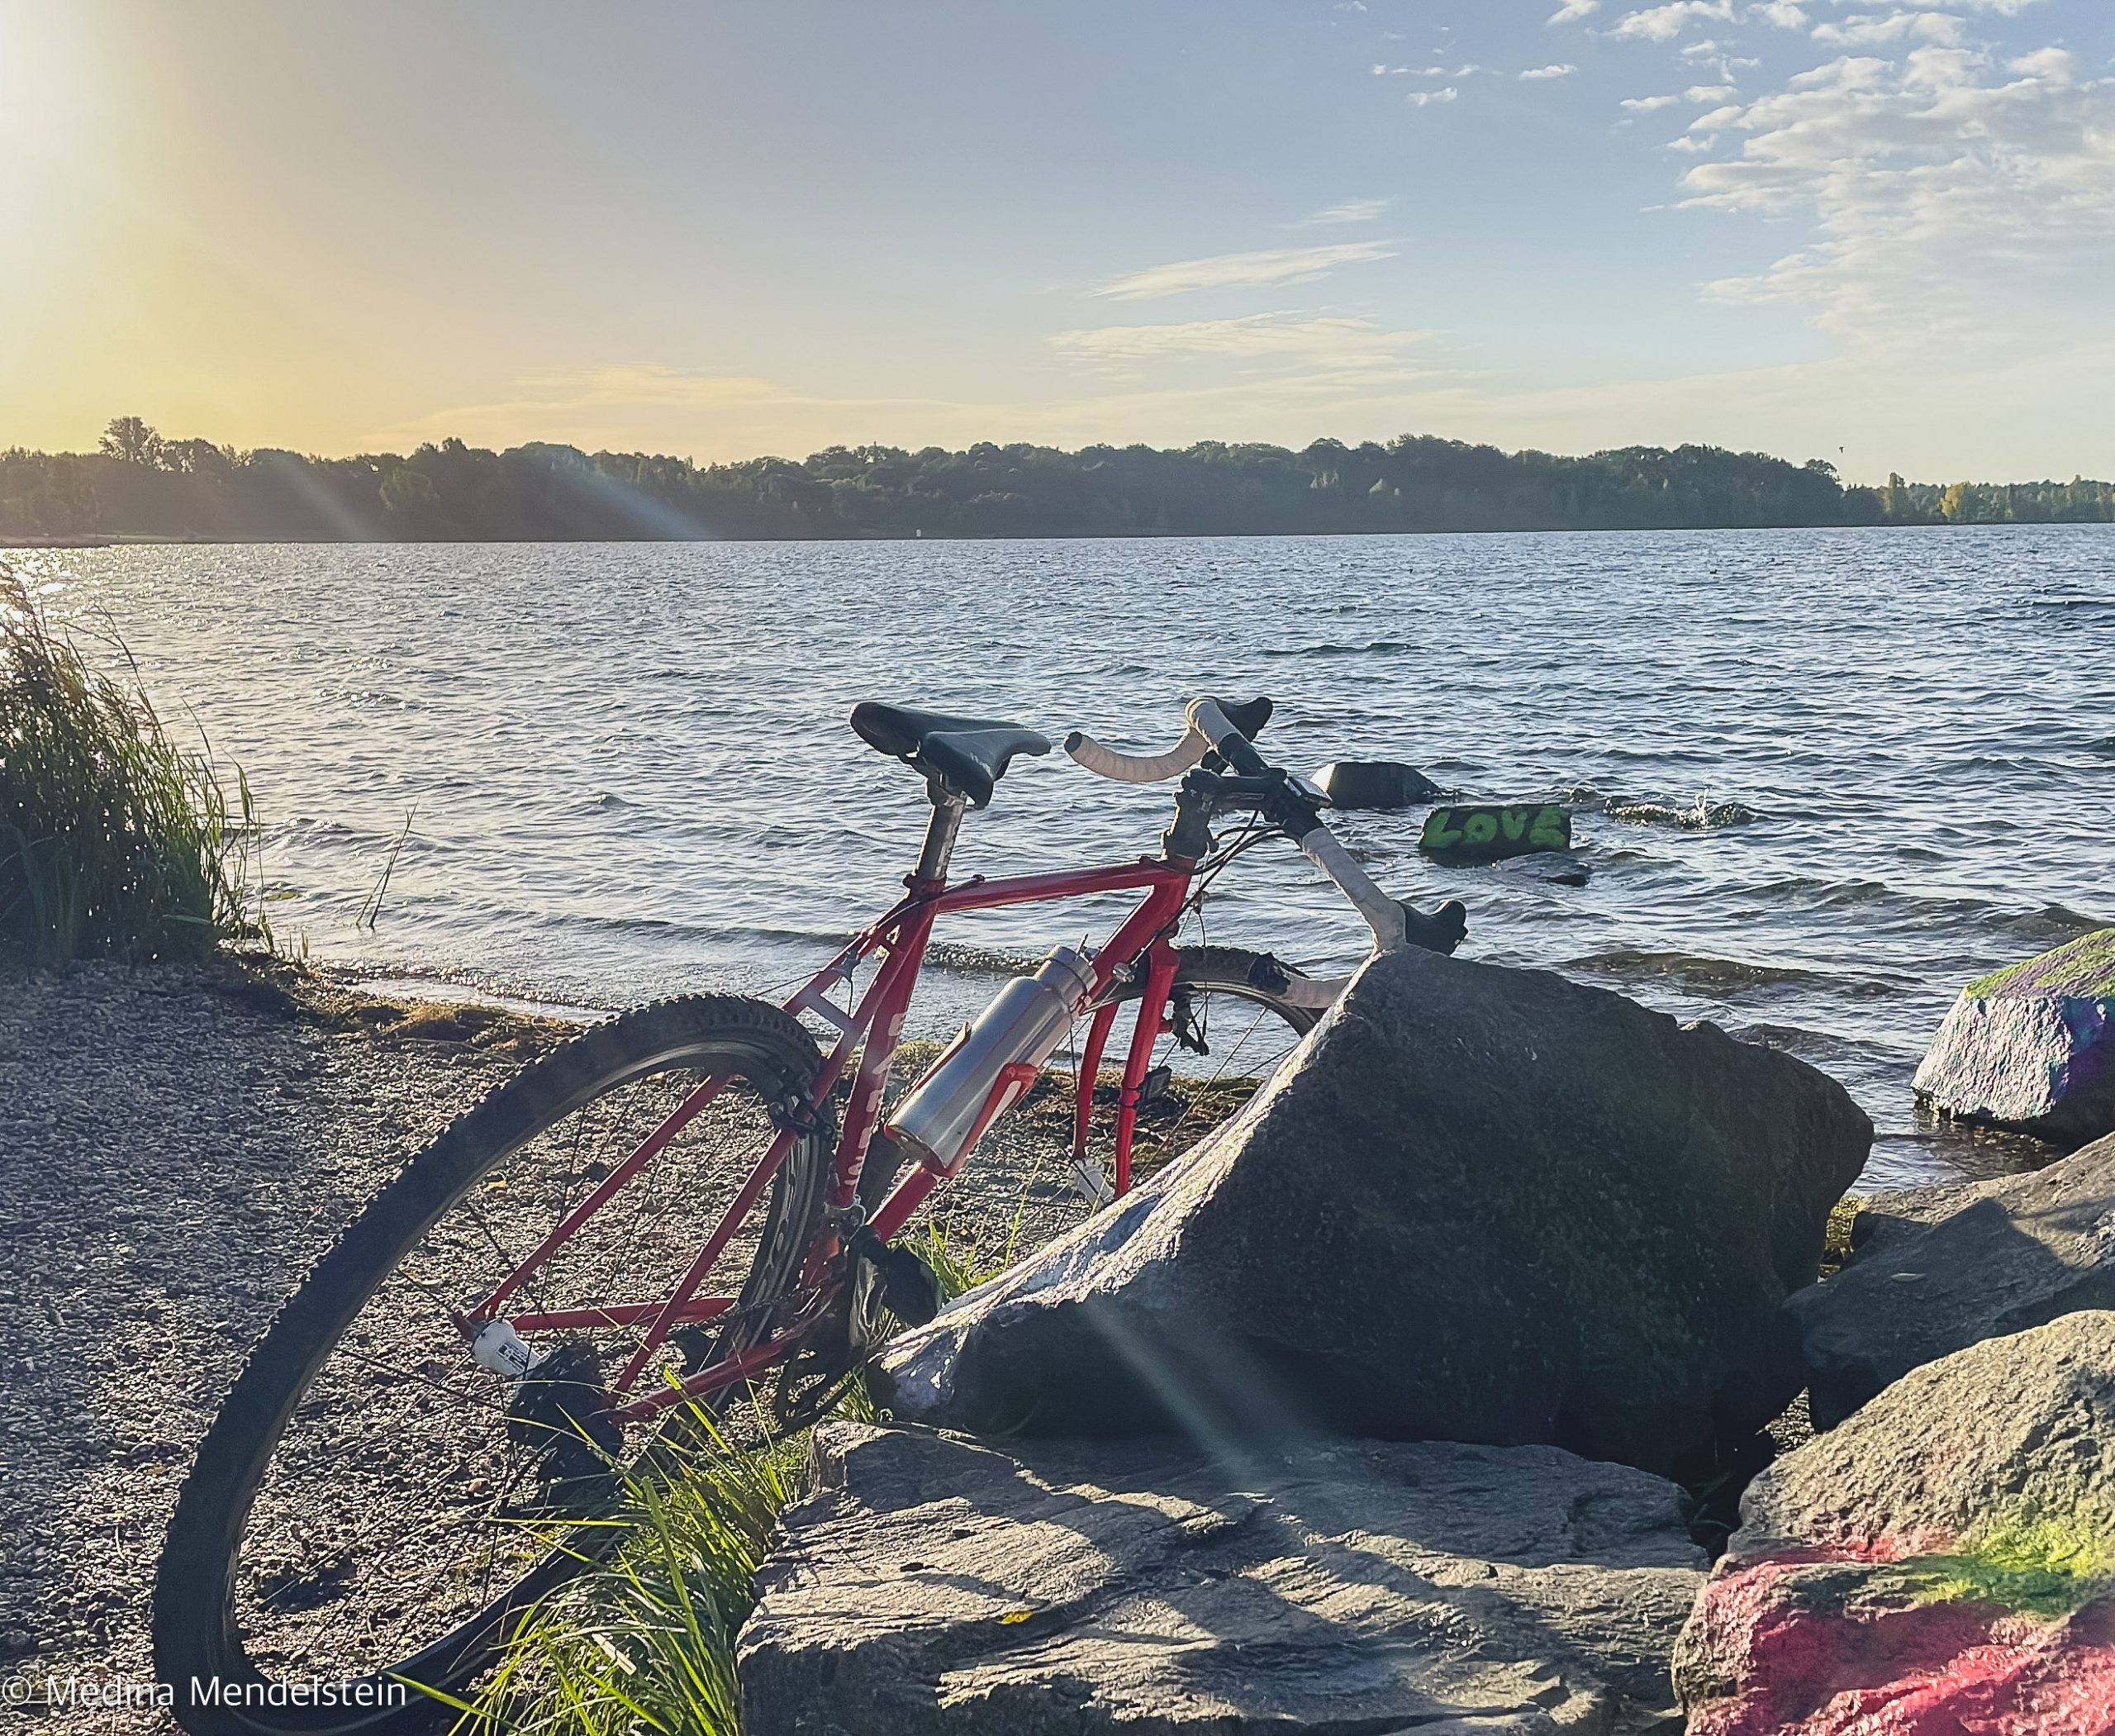 Rennrad bei einer Radreise lehnt an Steinen. Es steht auf einem Steinstrand am Wasser.